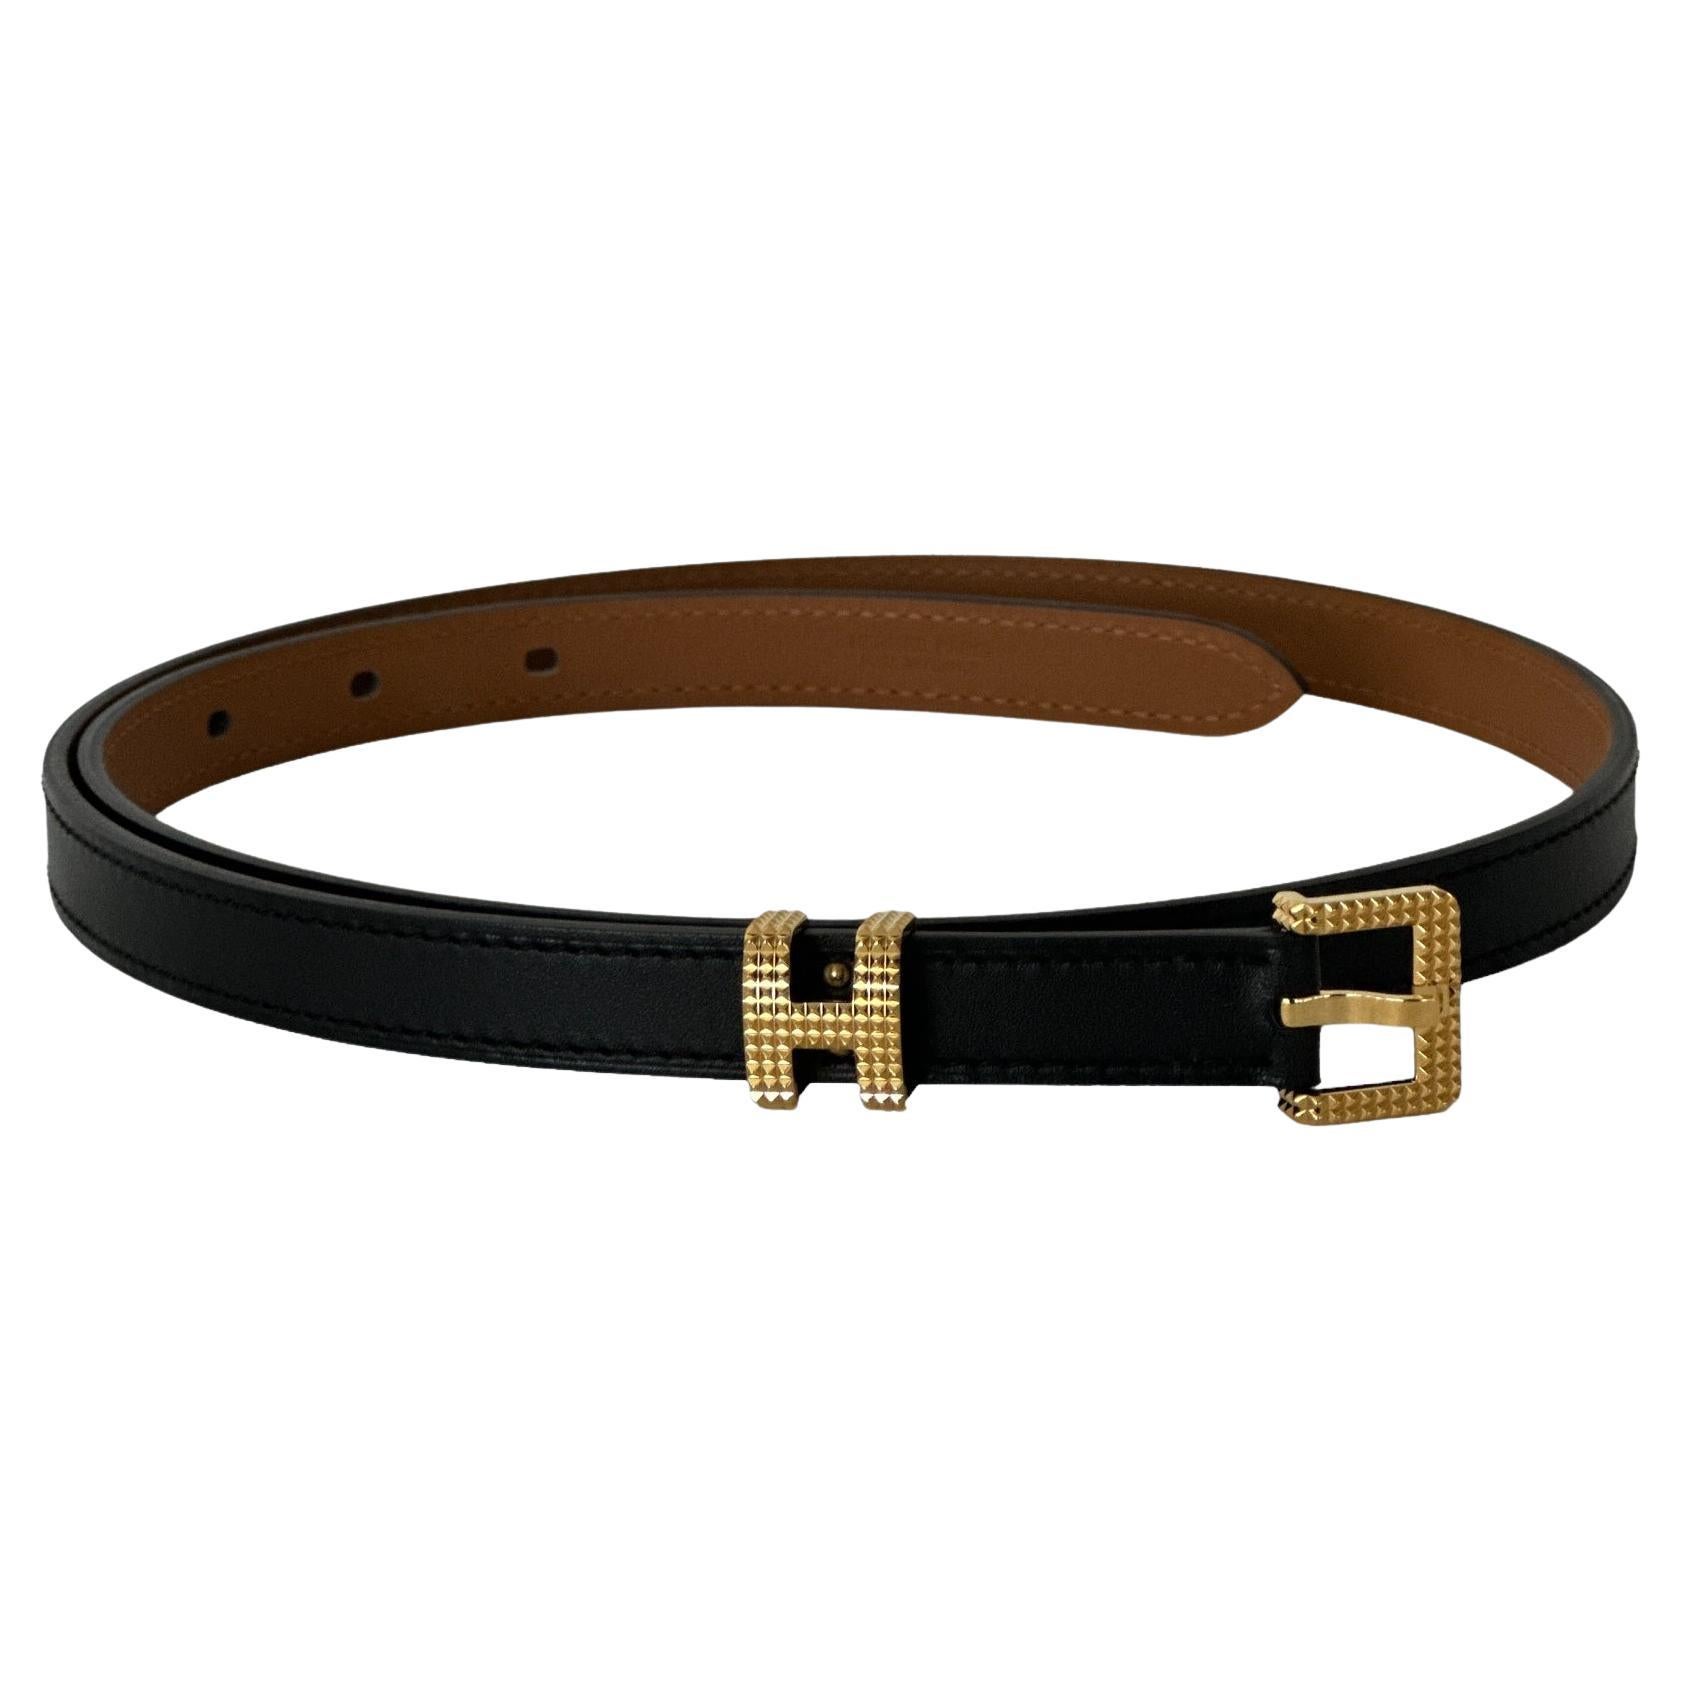 Hermes Kelly 18 Belt Black/Noir Epsom Rose Gold-plated hardware